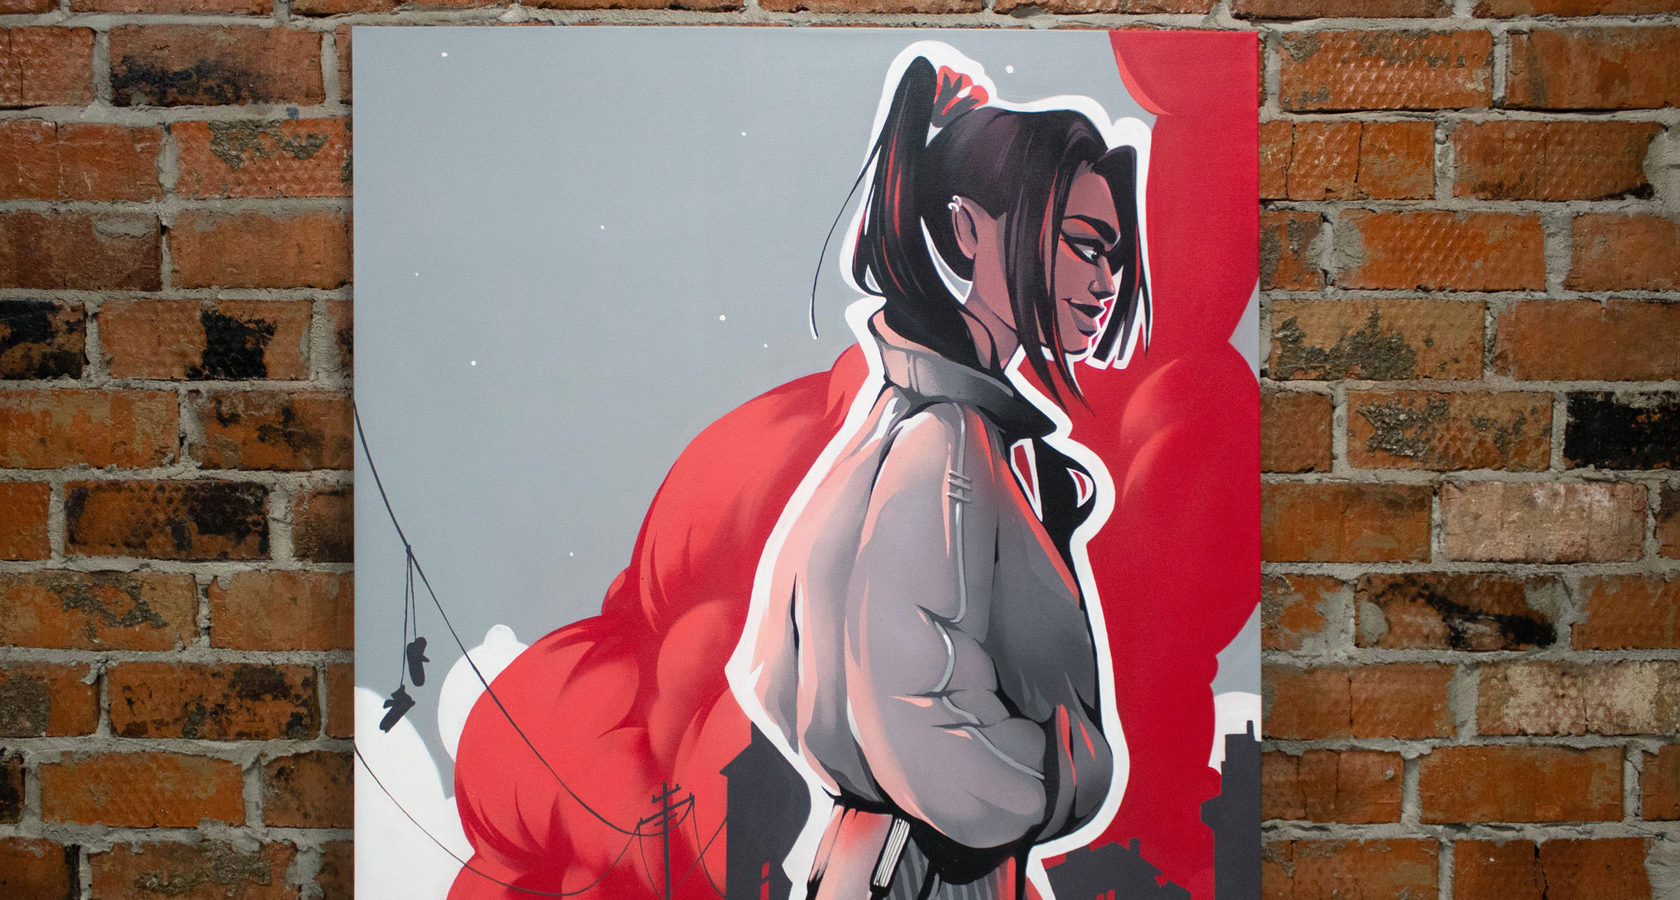 Голая Лана Роудс любит яркое графити на стене и сверкать грудью